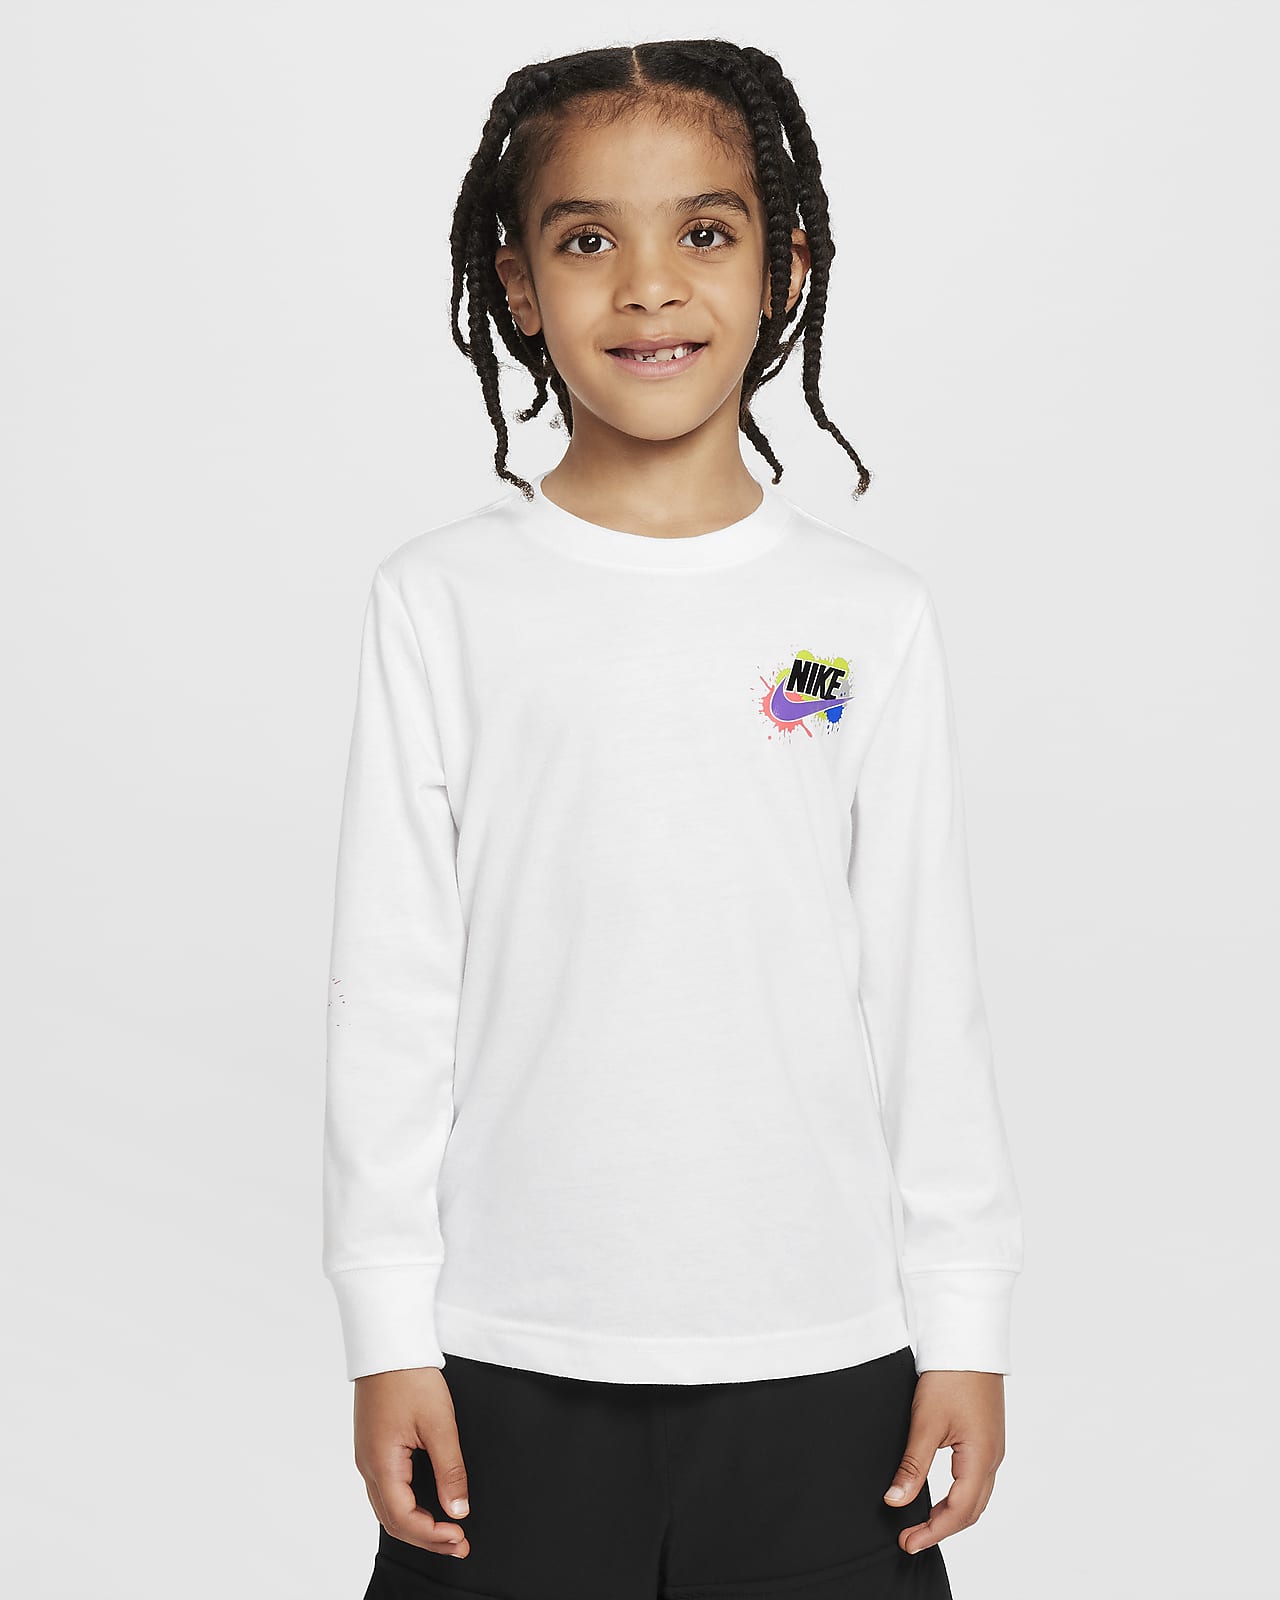 Nike "Express Yourself" Little Kids' Long Sleeve T-Shirt